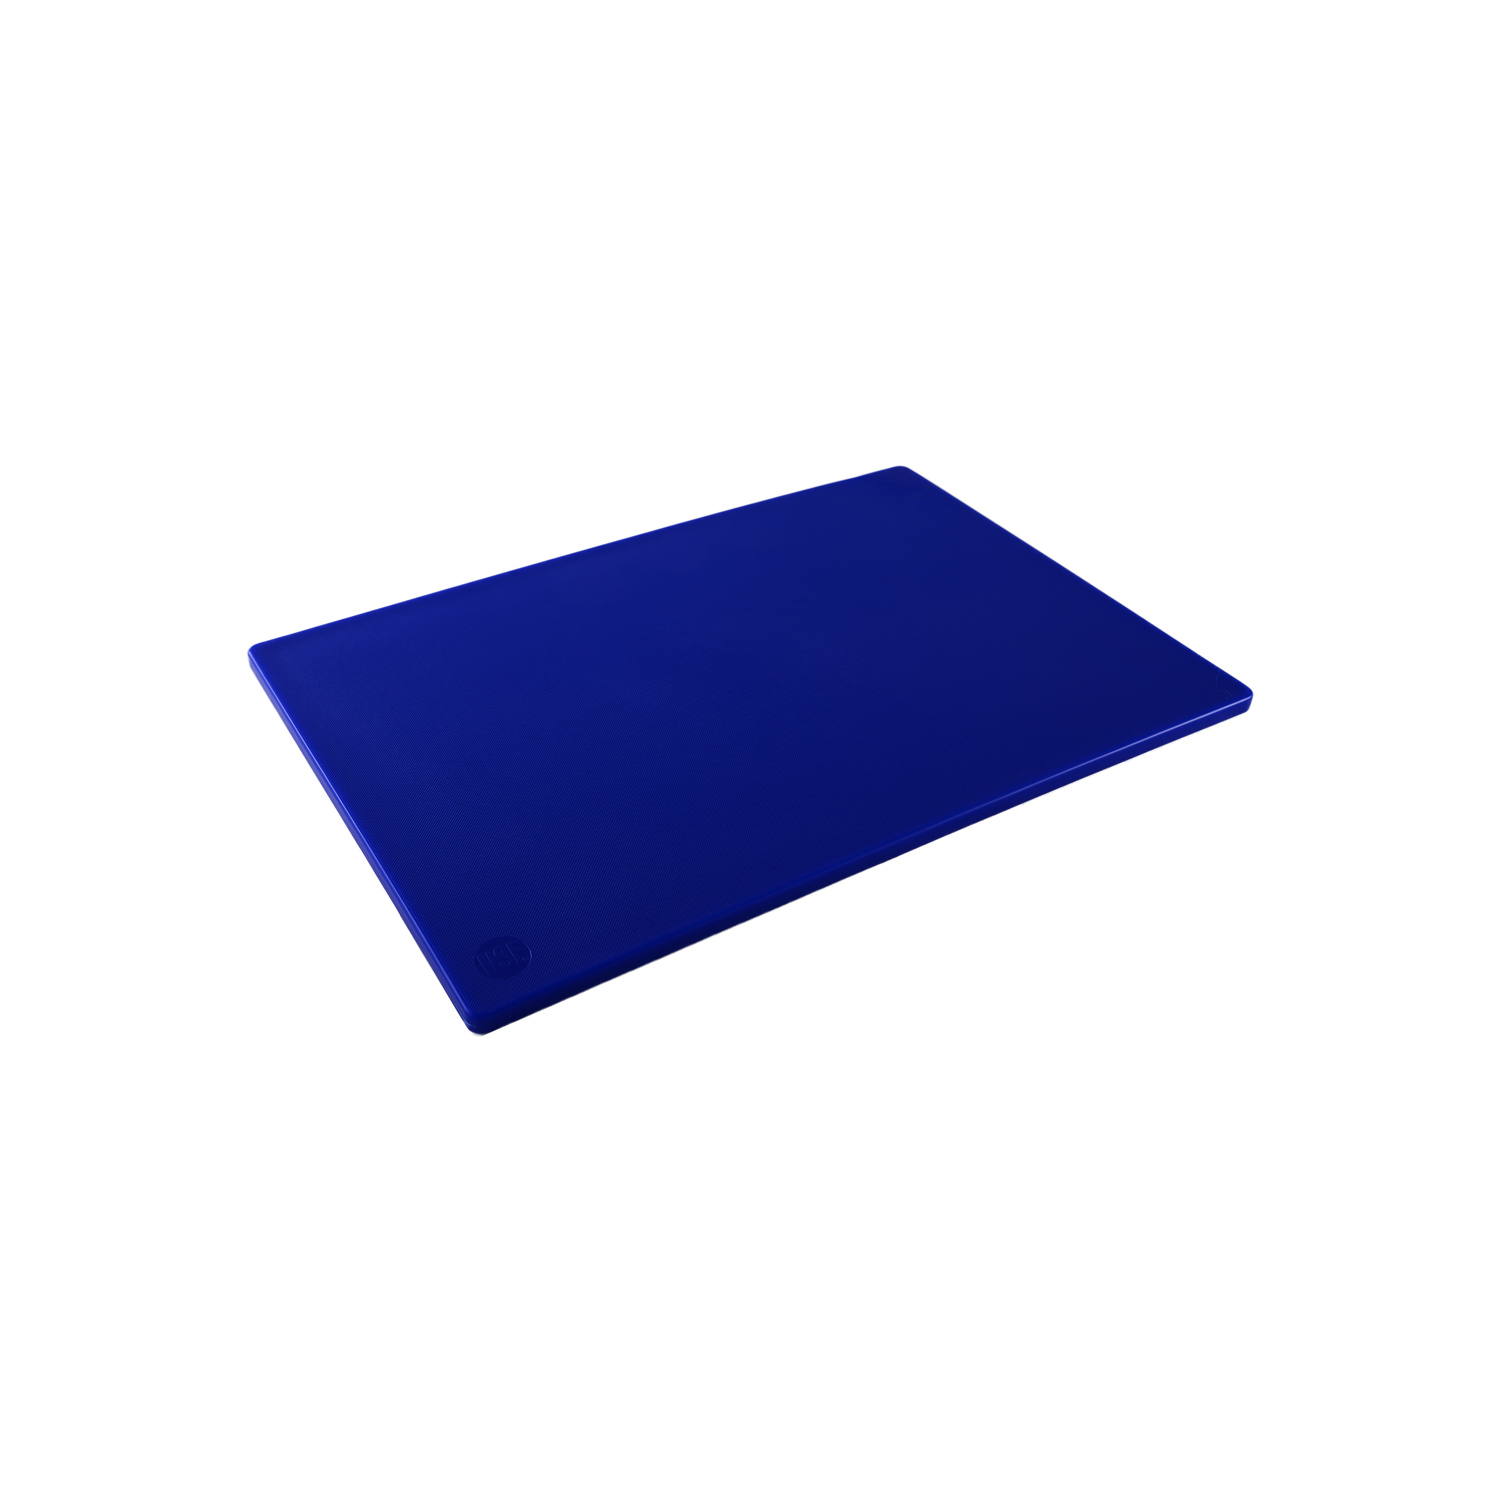 CAC China CBPH-1520BL Blue Plastic Cutting Board 20" x 15"